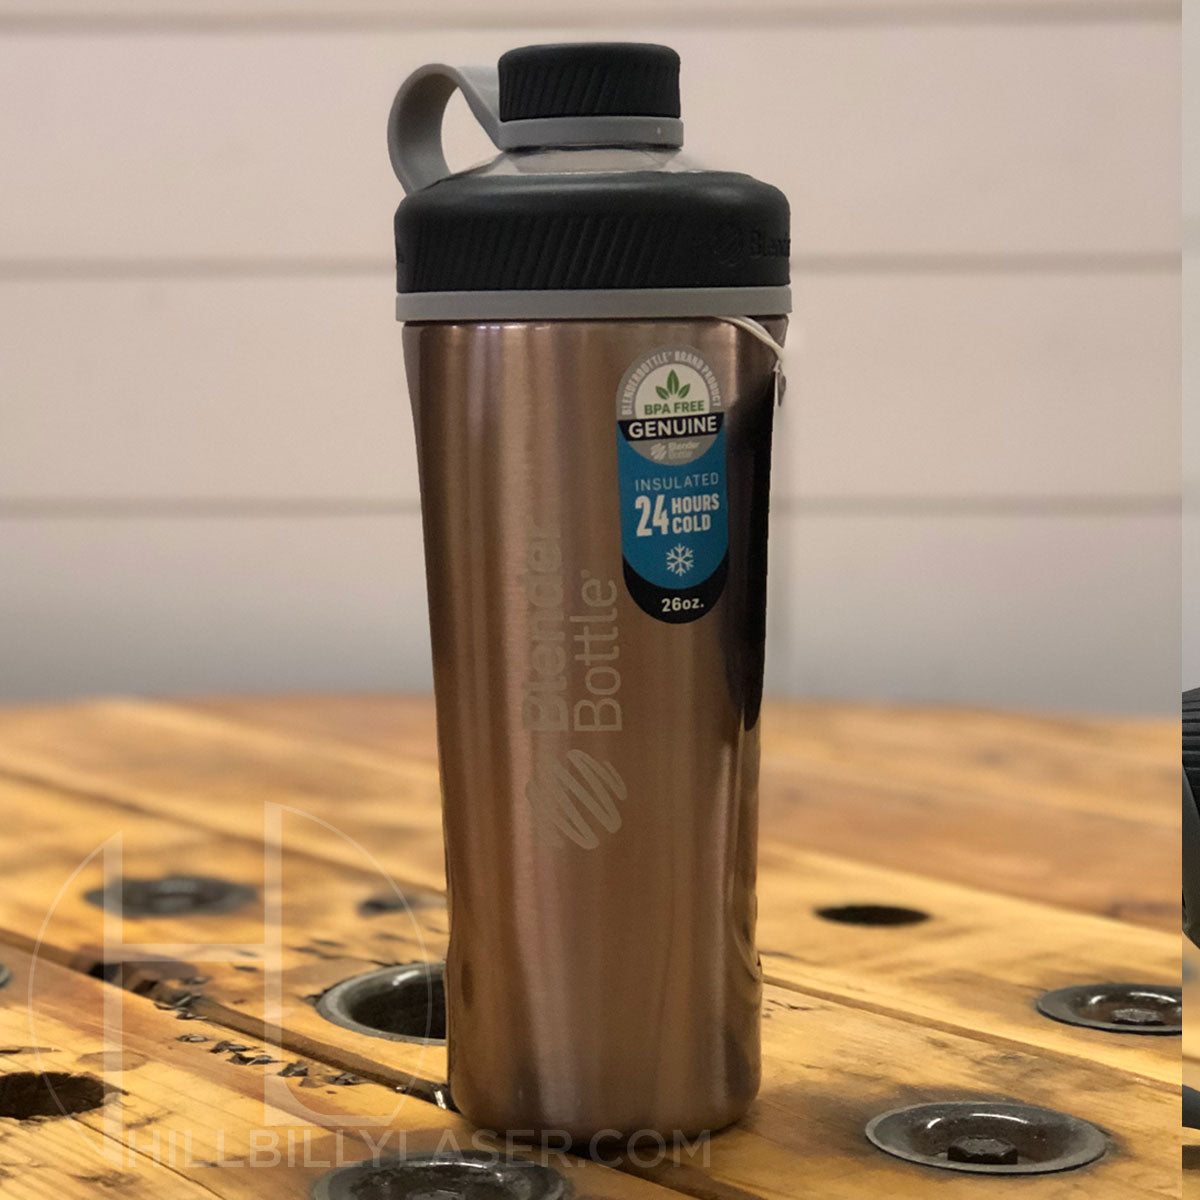 Custom Blender Bottle, Personalized Stainless Insulated Radian Protein  Shaker 26oz